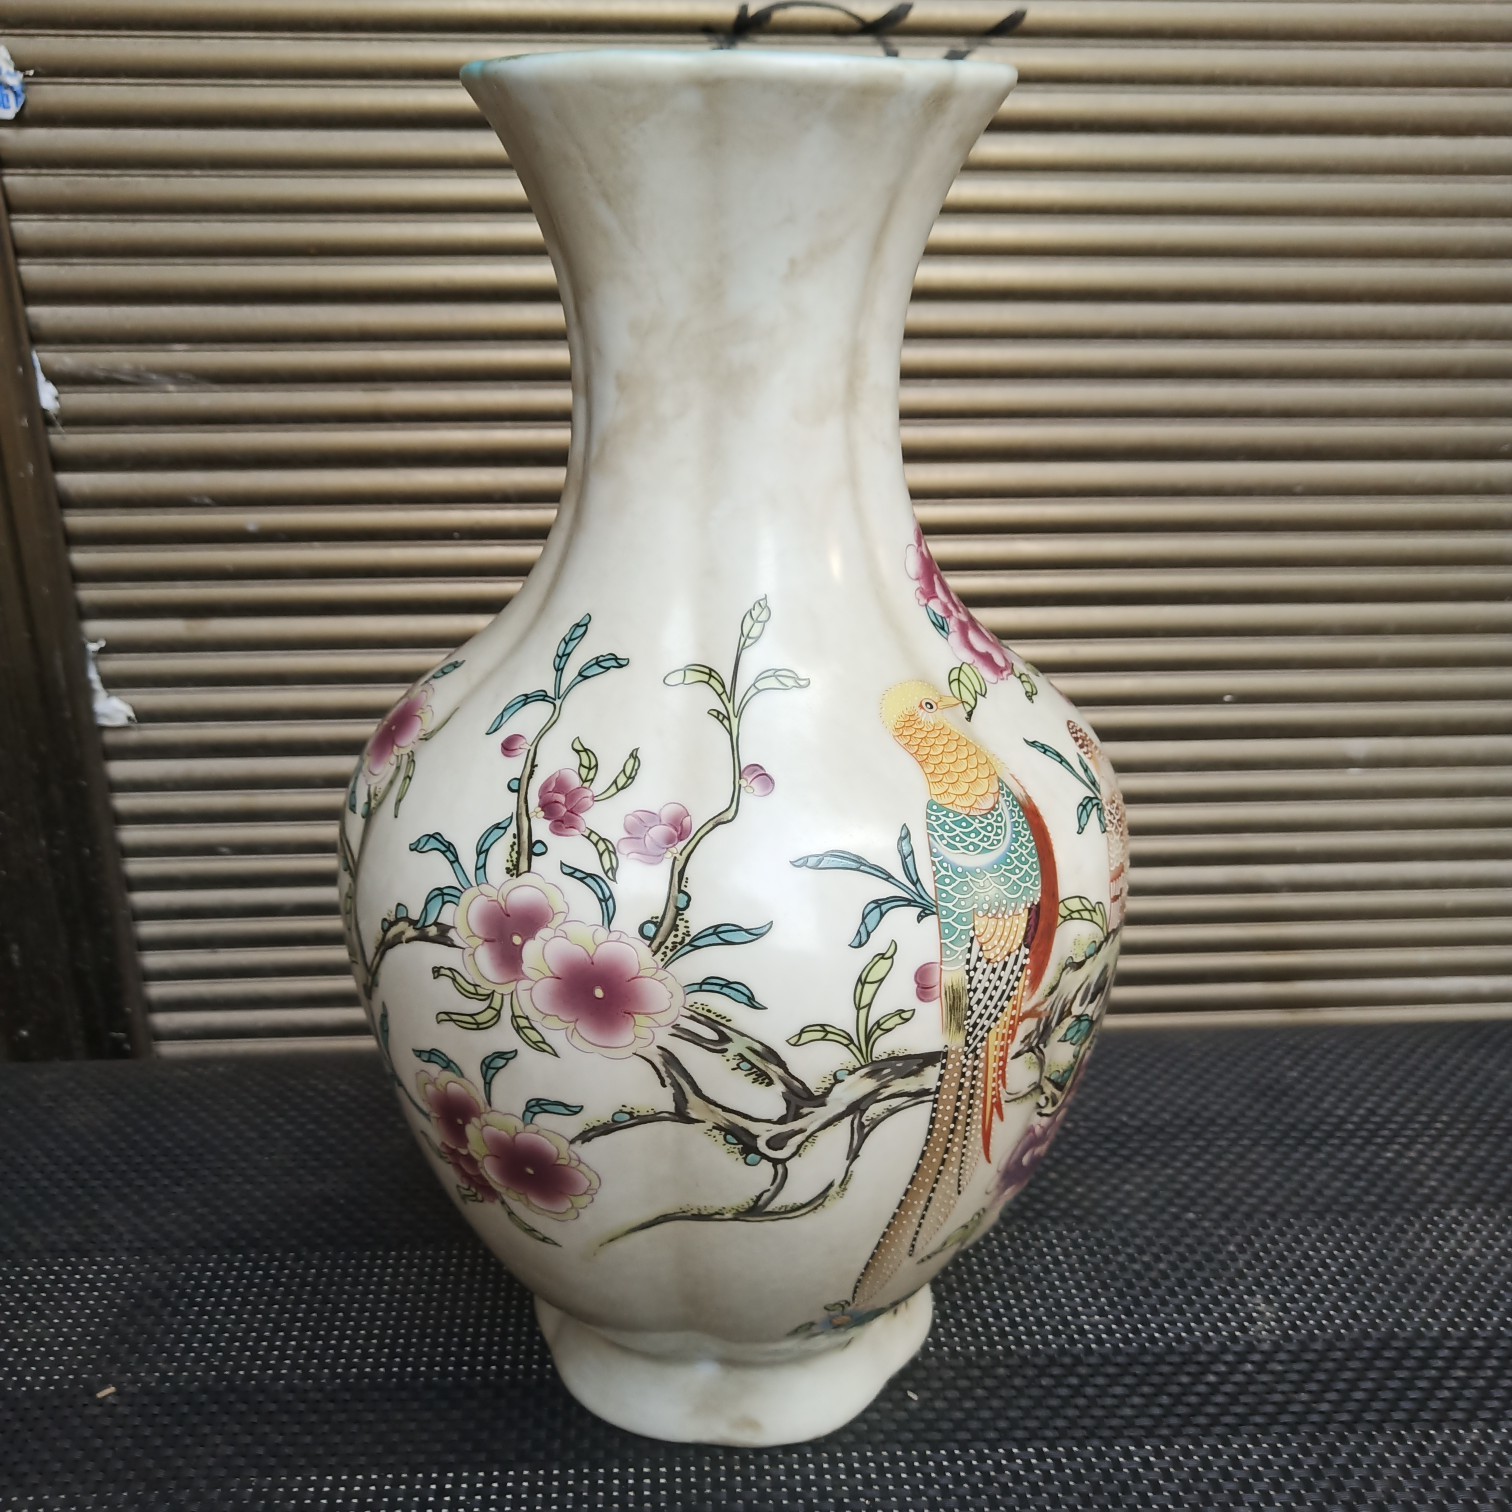 厂家直销古董批发做旧仿古大清乾隆朝代各式各样花瓶景德镇瓷器